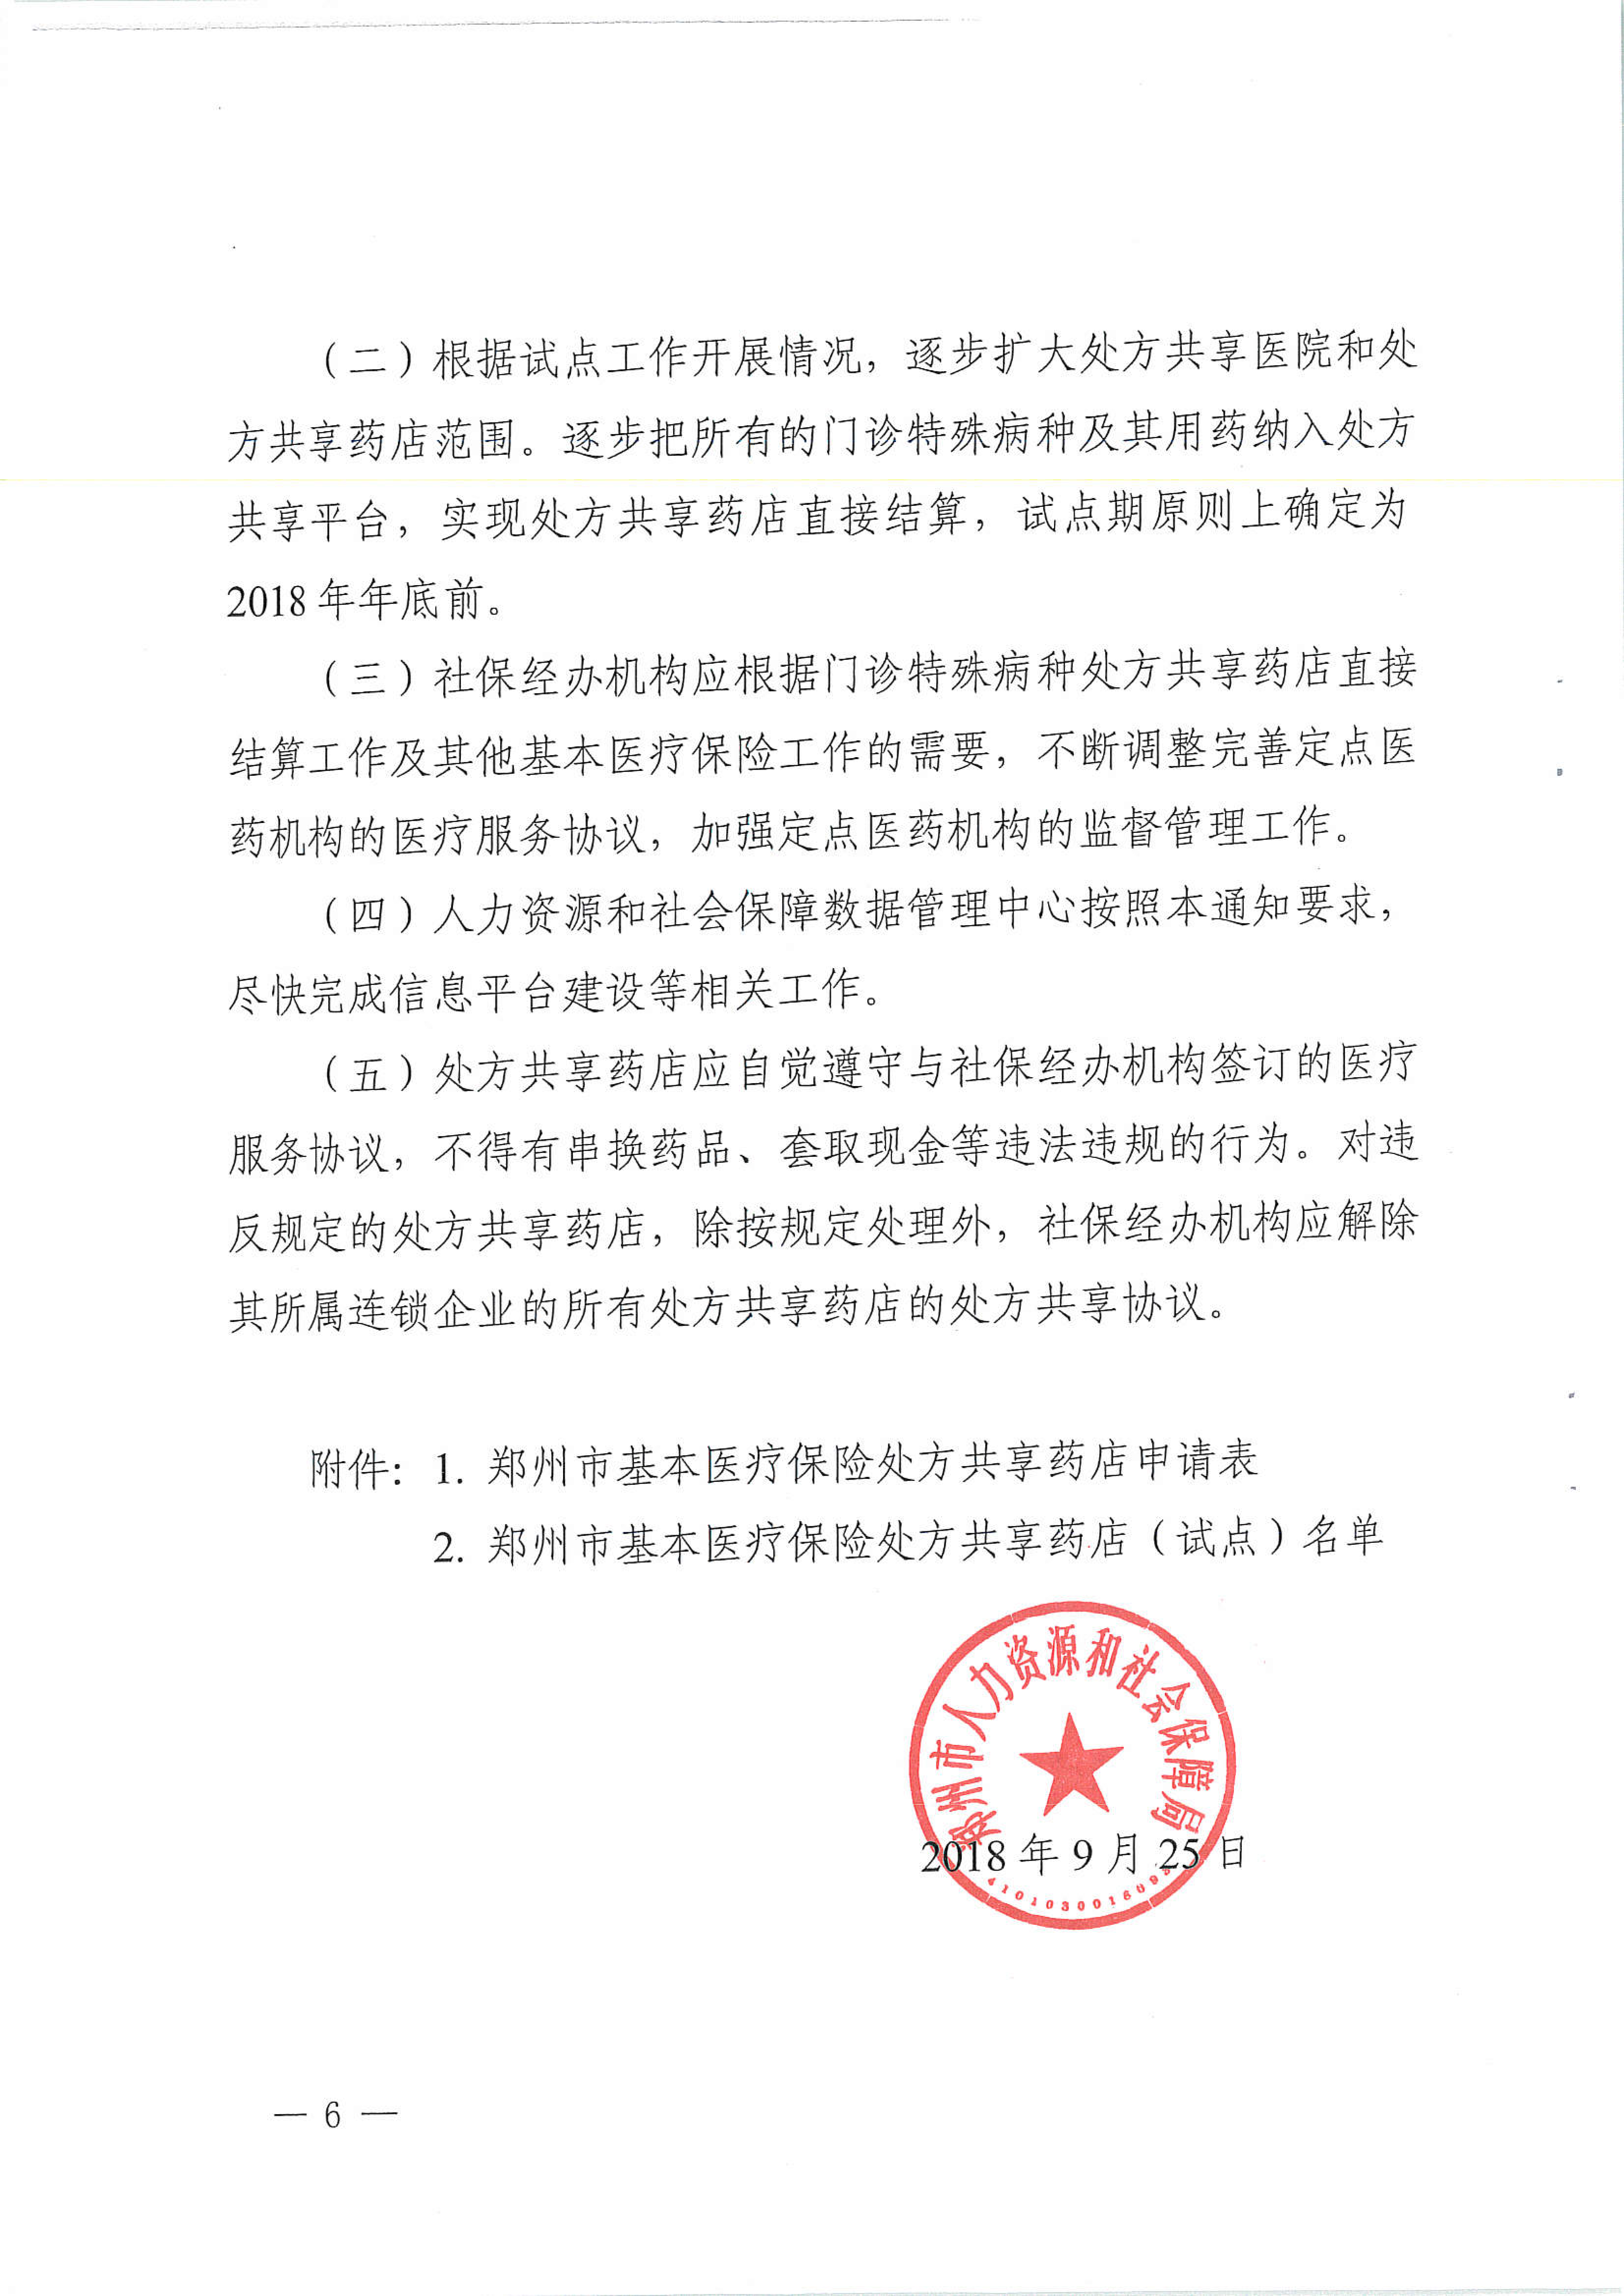 河南省郑州市人力资源和社会保障局关于开展郑州市基本医疗保险门诊